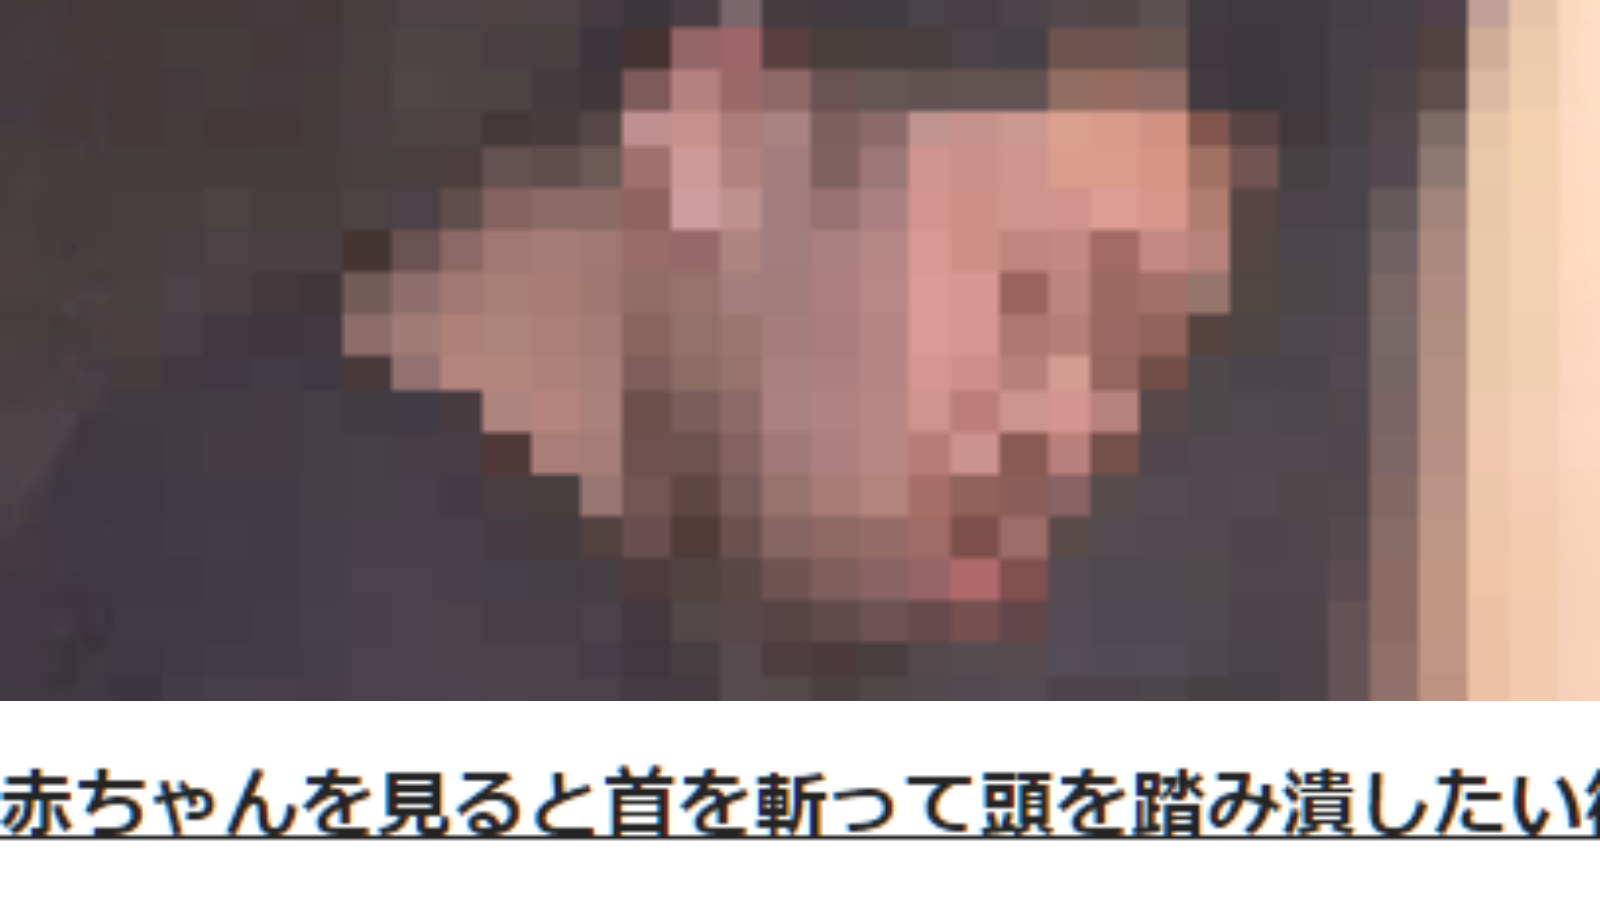 西岡竜司のFacebook顔画像「可愛いからいじめたい衝動は誰にもあるか」乳児冷凍庫事件